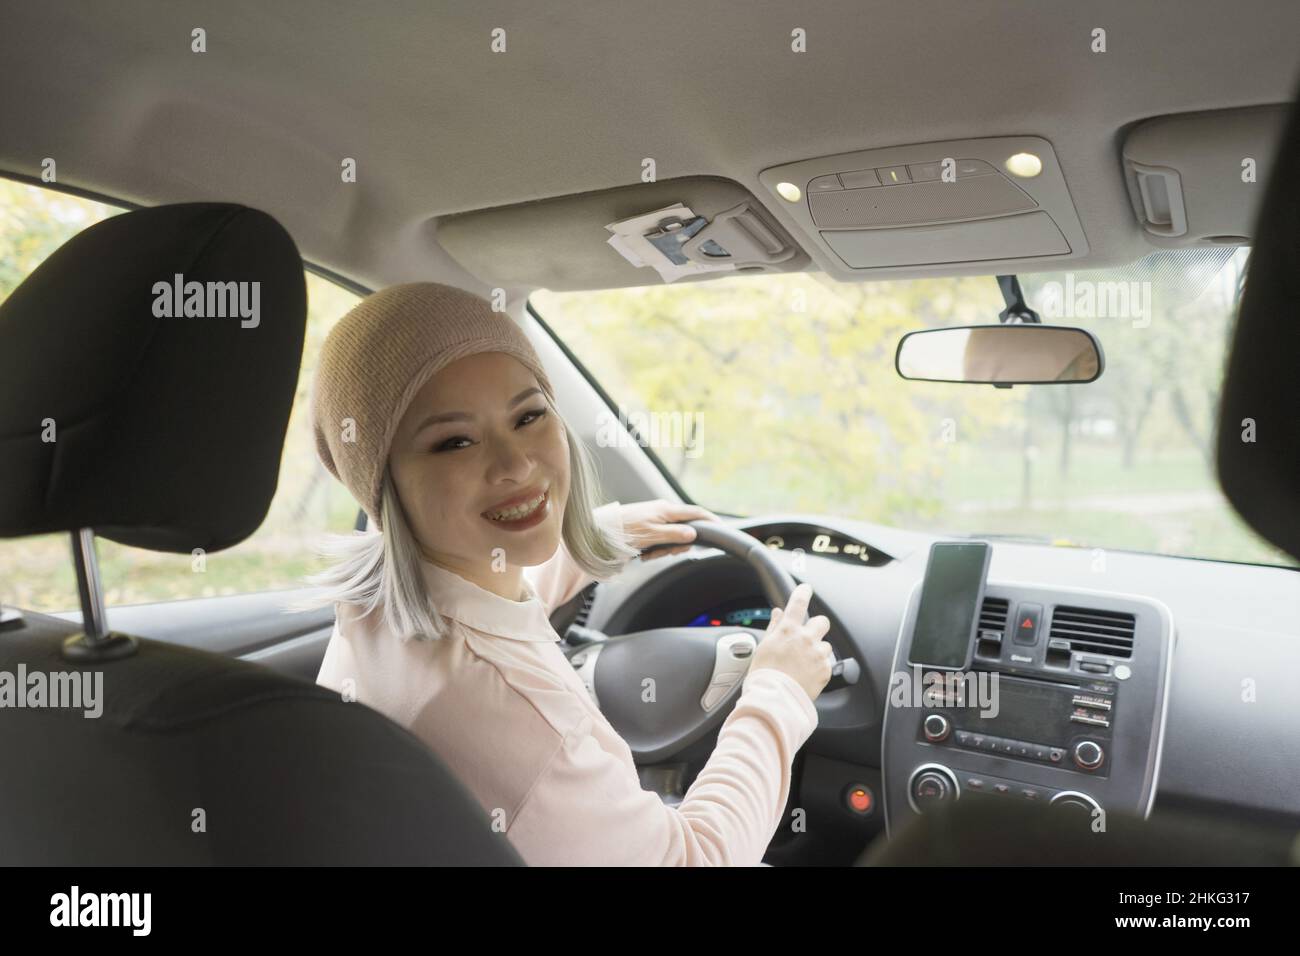 Portrait asiatique femme regardant de haut en arrière de la voiture.Femme asiatique mûre regardant l'enfant ou le passager tenant un volant.Femme asiatique blonde d'âge moyen dans la voiture. Banque D'Images